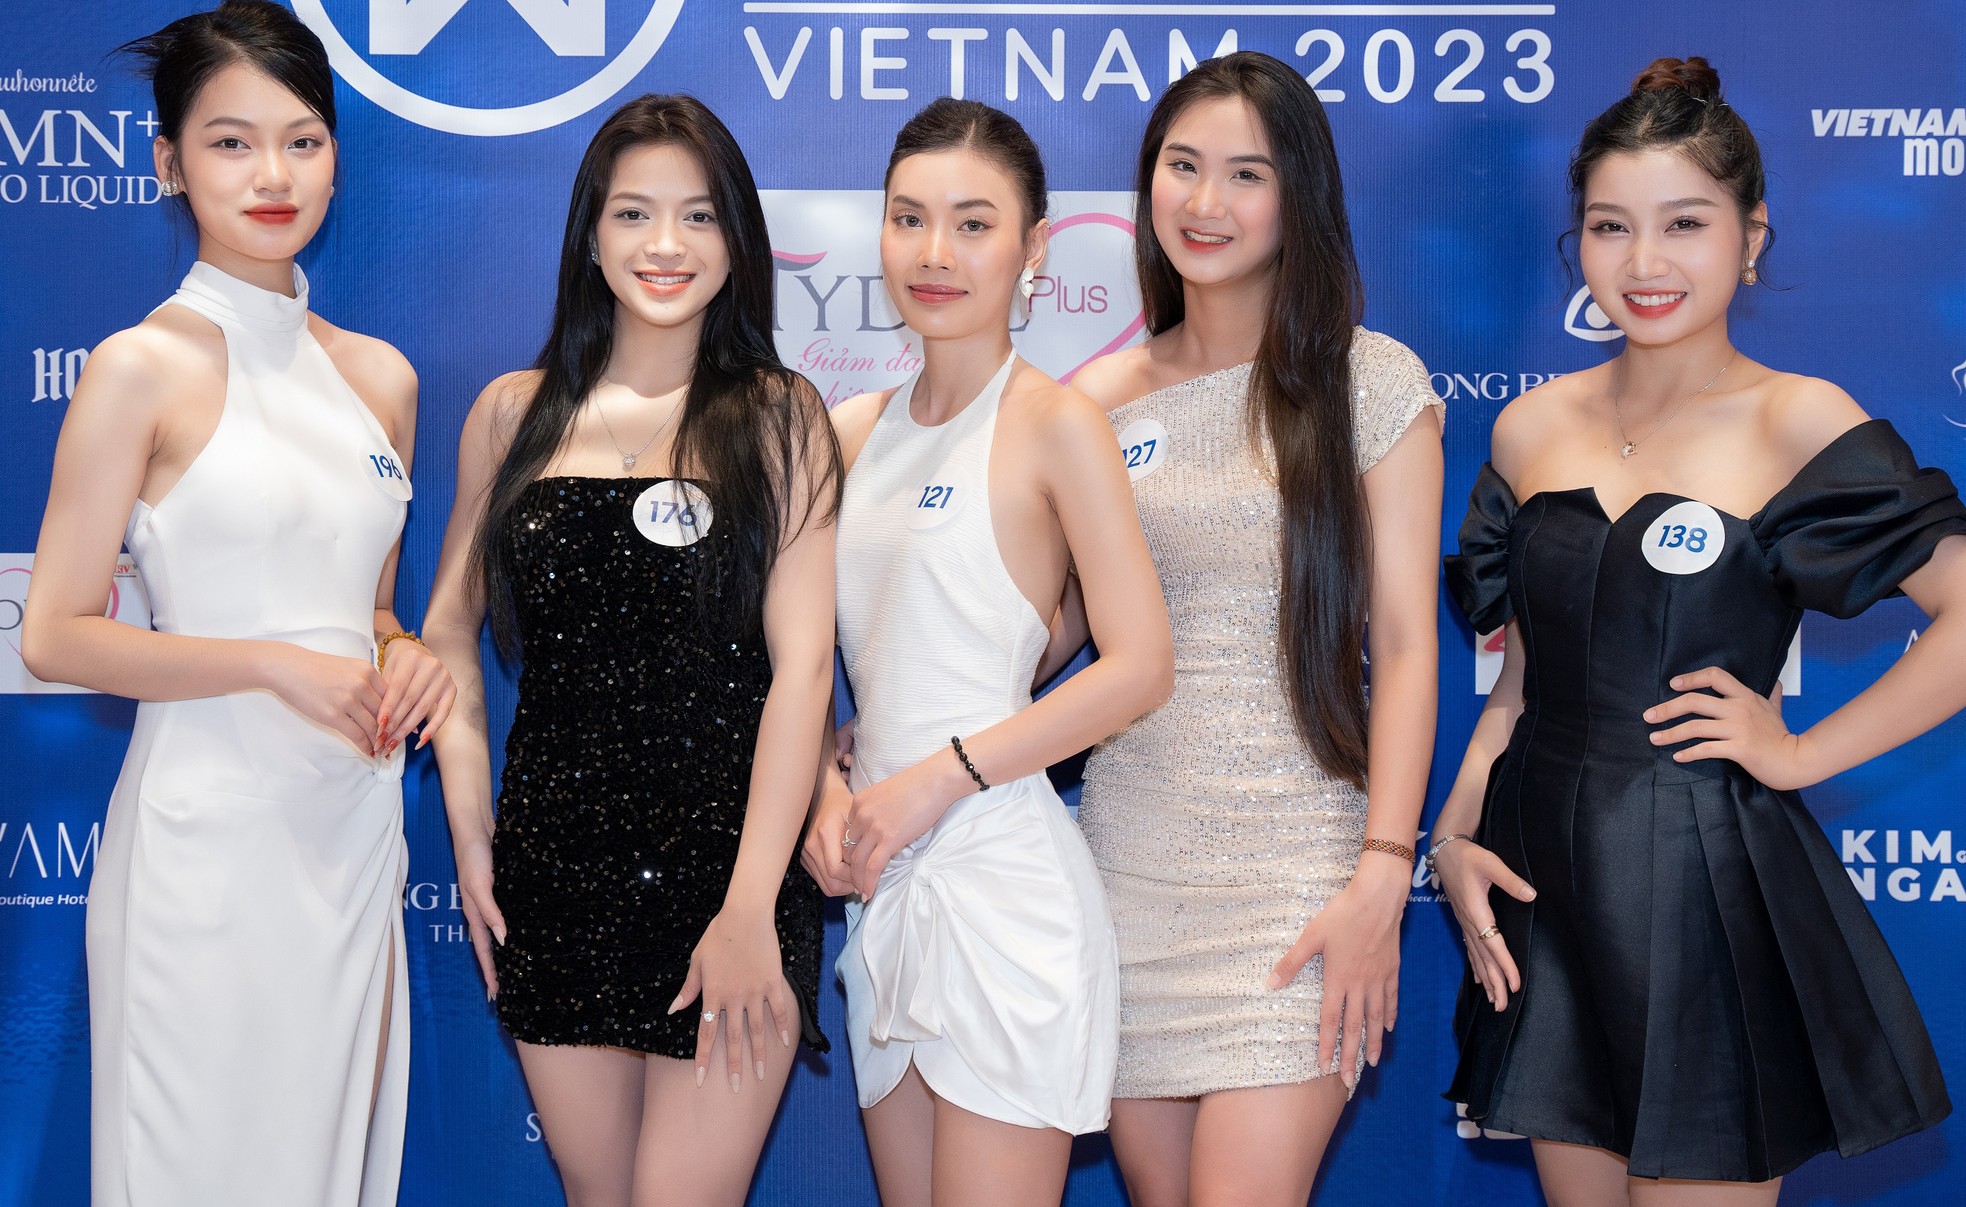 Tiểu Vy, Lương Thùy Linh, Đỗ Thị Hà mặc gợi cảm khi làm giám khảo - Ảnh 17.